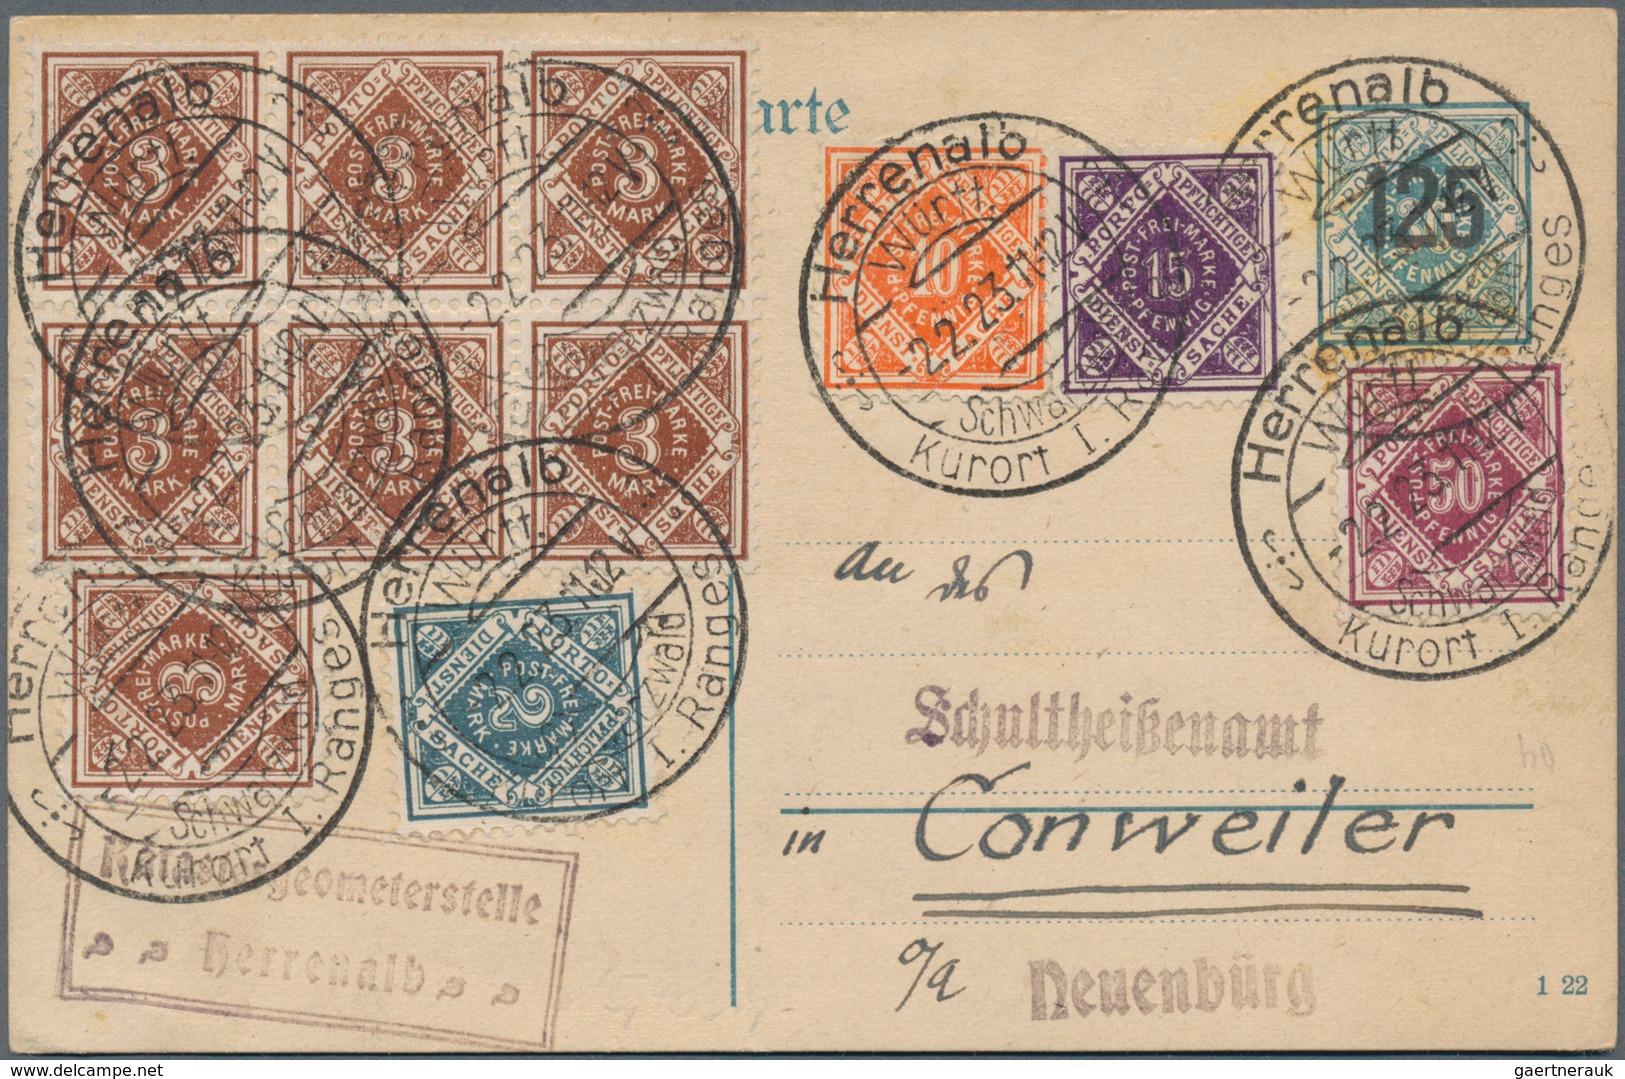 Württemberg - Marken und Briefe: 1882/1925, sehr vielseitige Sammlung von ca. 290 Briefen und Karten